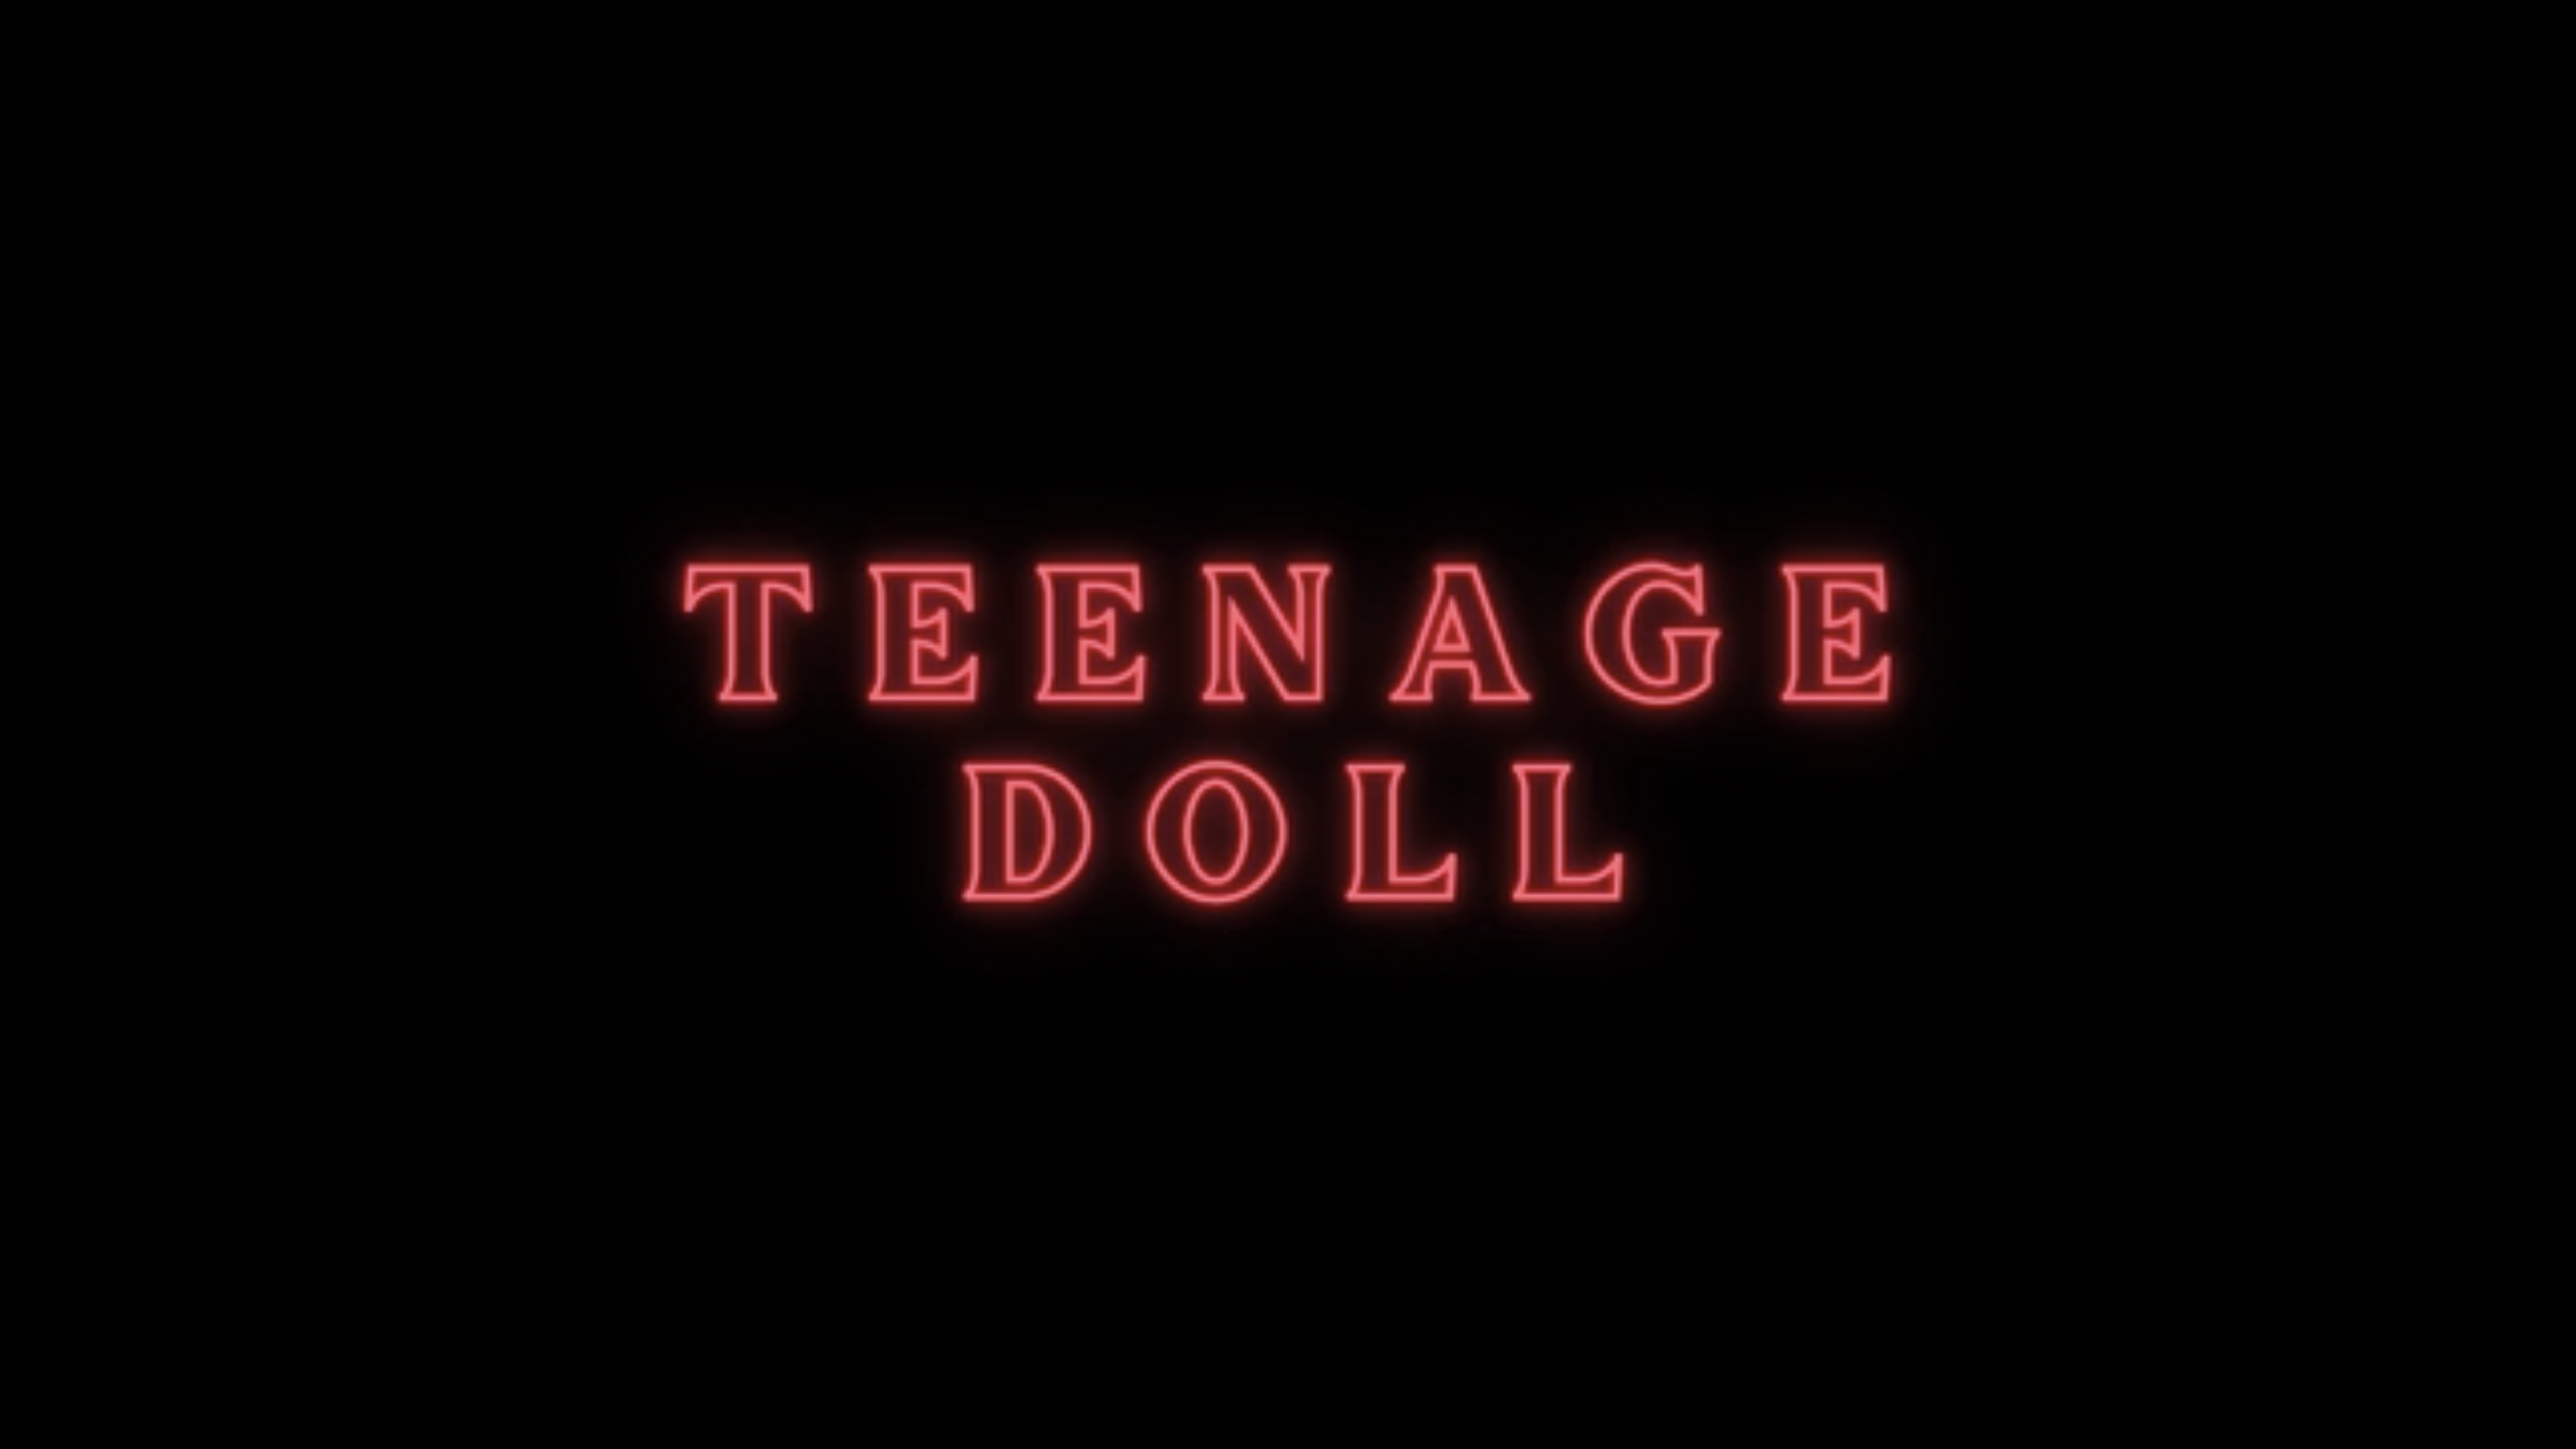 Teenage Doll